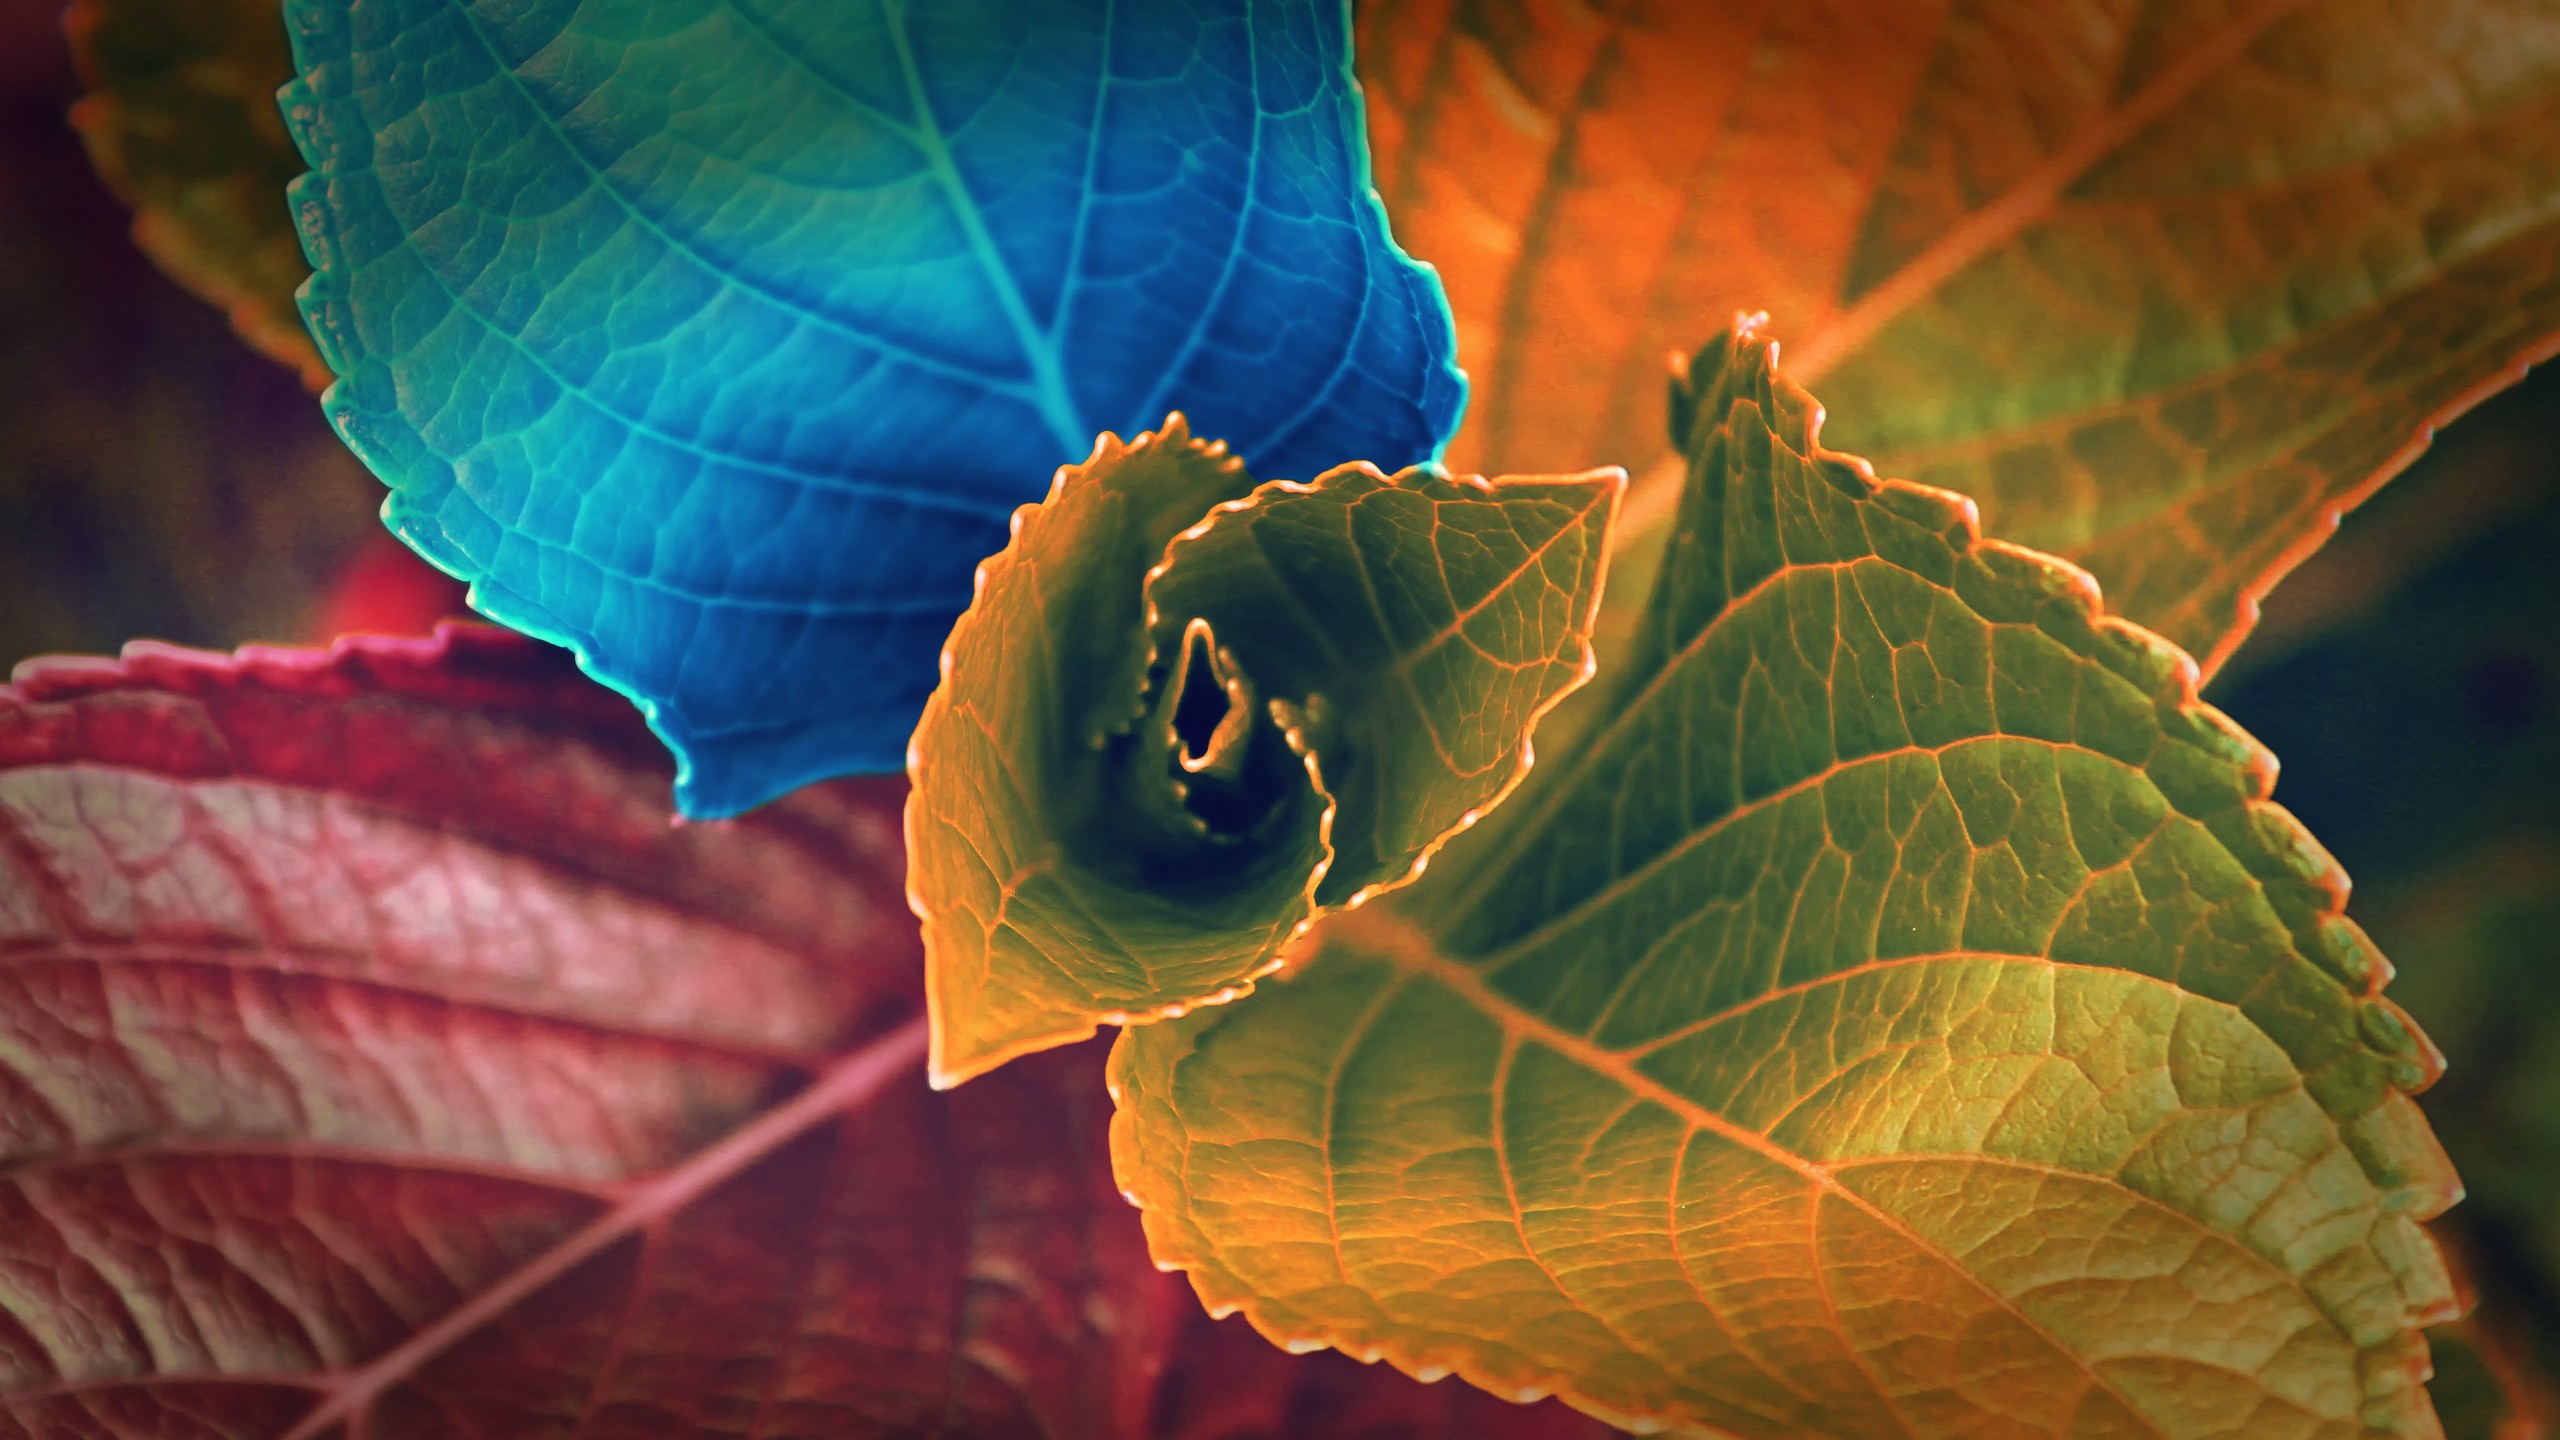 download foto wallpaper,leaf,orange,blue,green,flower